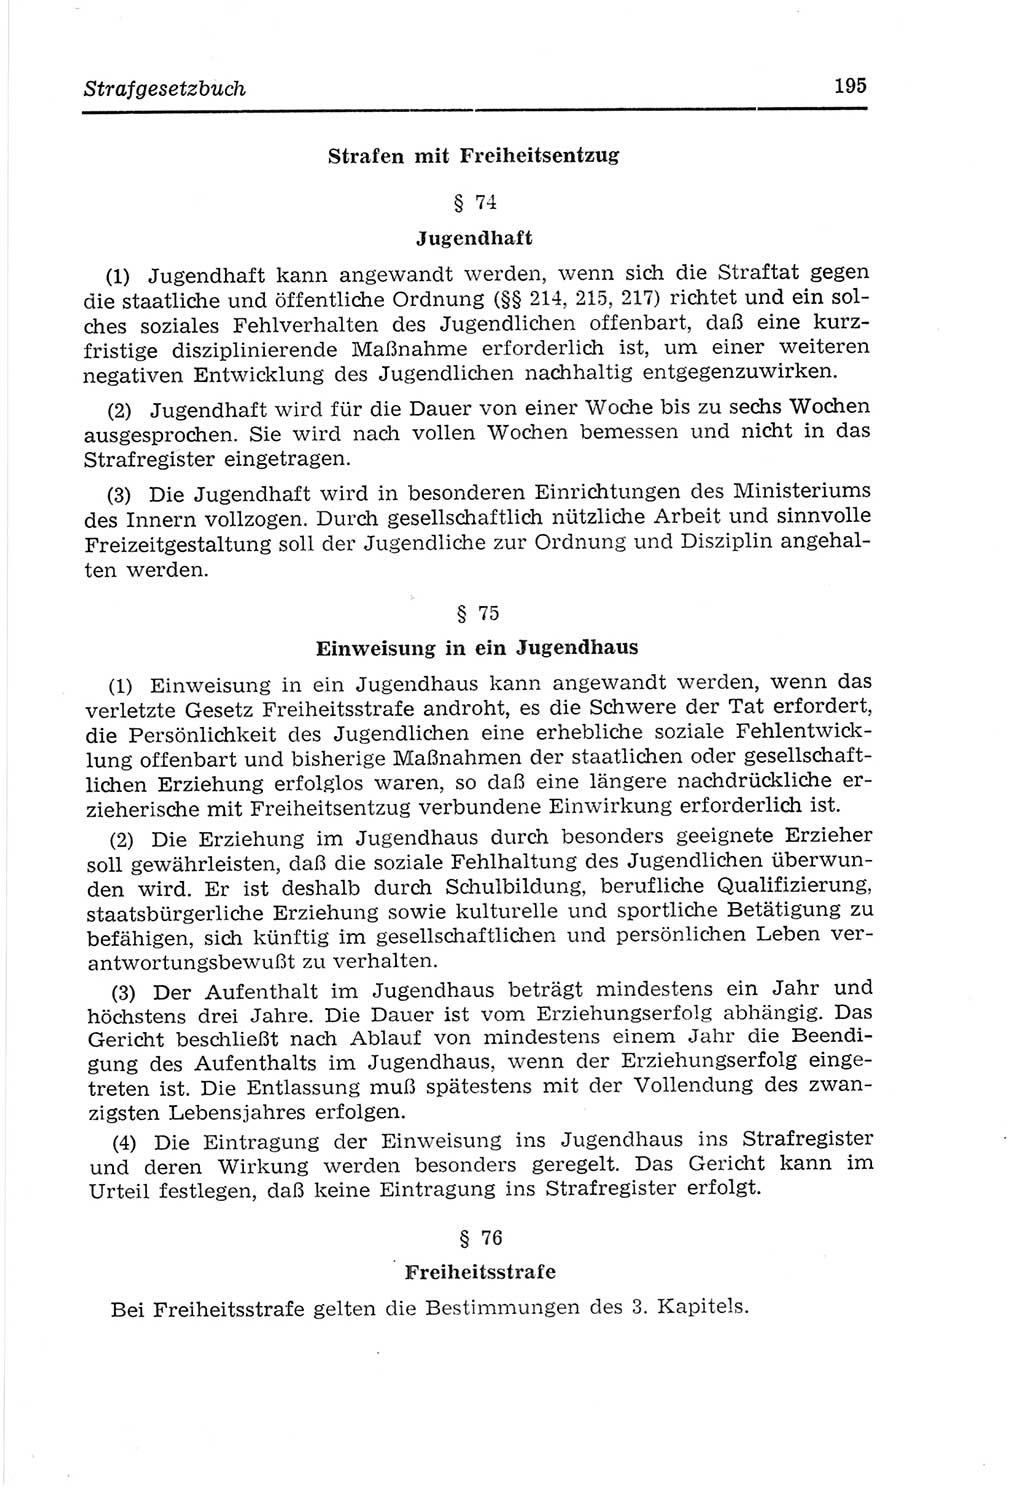 Strafvollzugs- und Wiedereingliederungsgesetz (SVWG) der Deutschen Demokratischen Republik (DDR) 1968, Seite 195 (SVWG DDR 1968, S. 195)